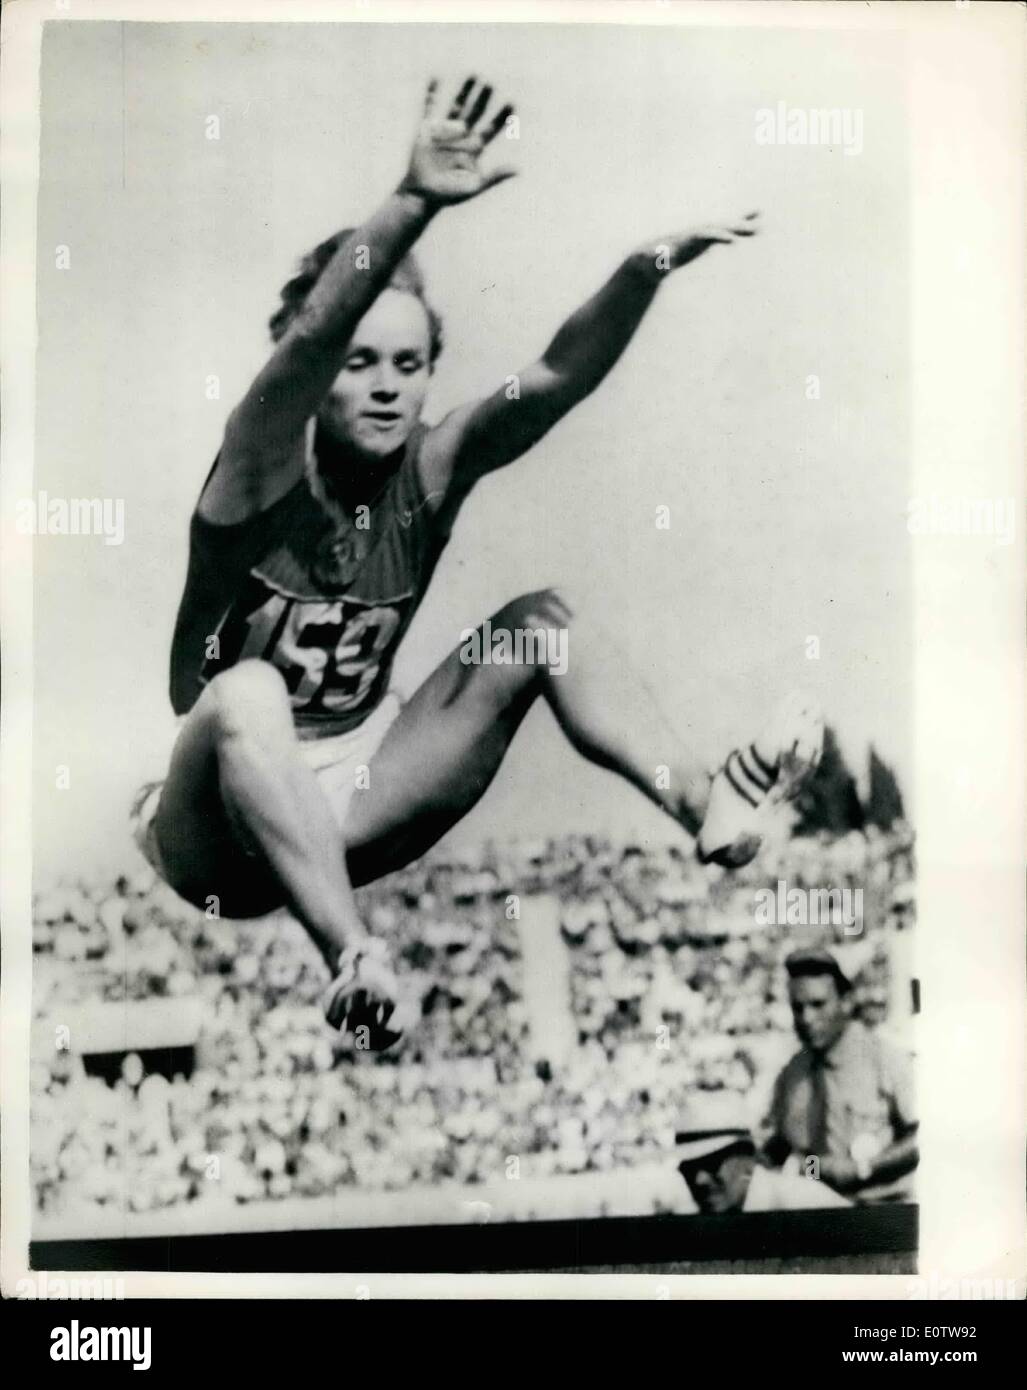 8. August 1960 - Olympische Spiele In Rom, Russin gewinnt Weitsprung mit neuen Rekord; V. Krepkina Russlands legen Sie einen neuen Olympischen Rekord heute beim Weitsprung der Frauen mit einem Sprung von 6,37 m (ca. 20 ft. 10 1/2 ins), gewann in Rom heute. Foto zeigt V. Krepkina Russlands bei der rekordverdächtigen Sprung in Rom heute. Stockfoto